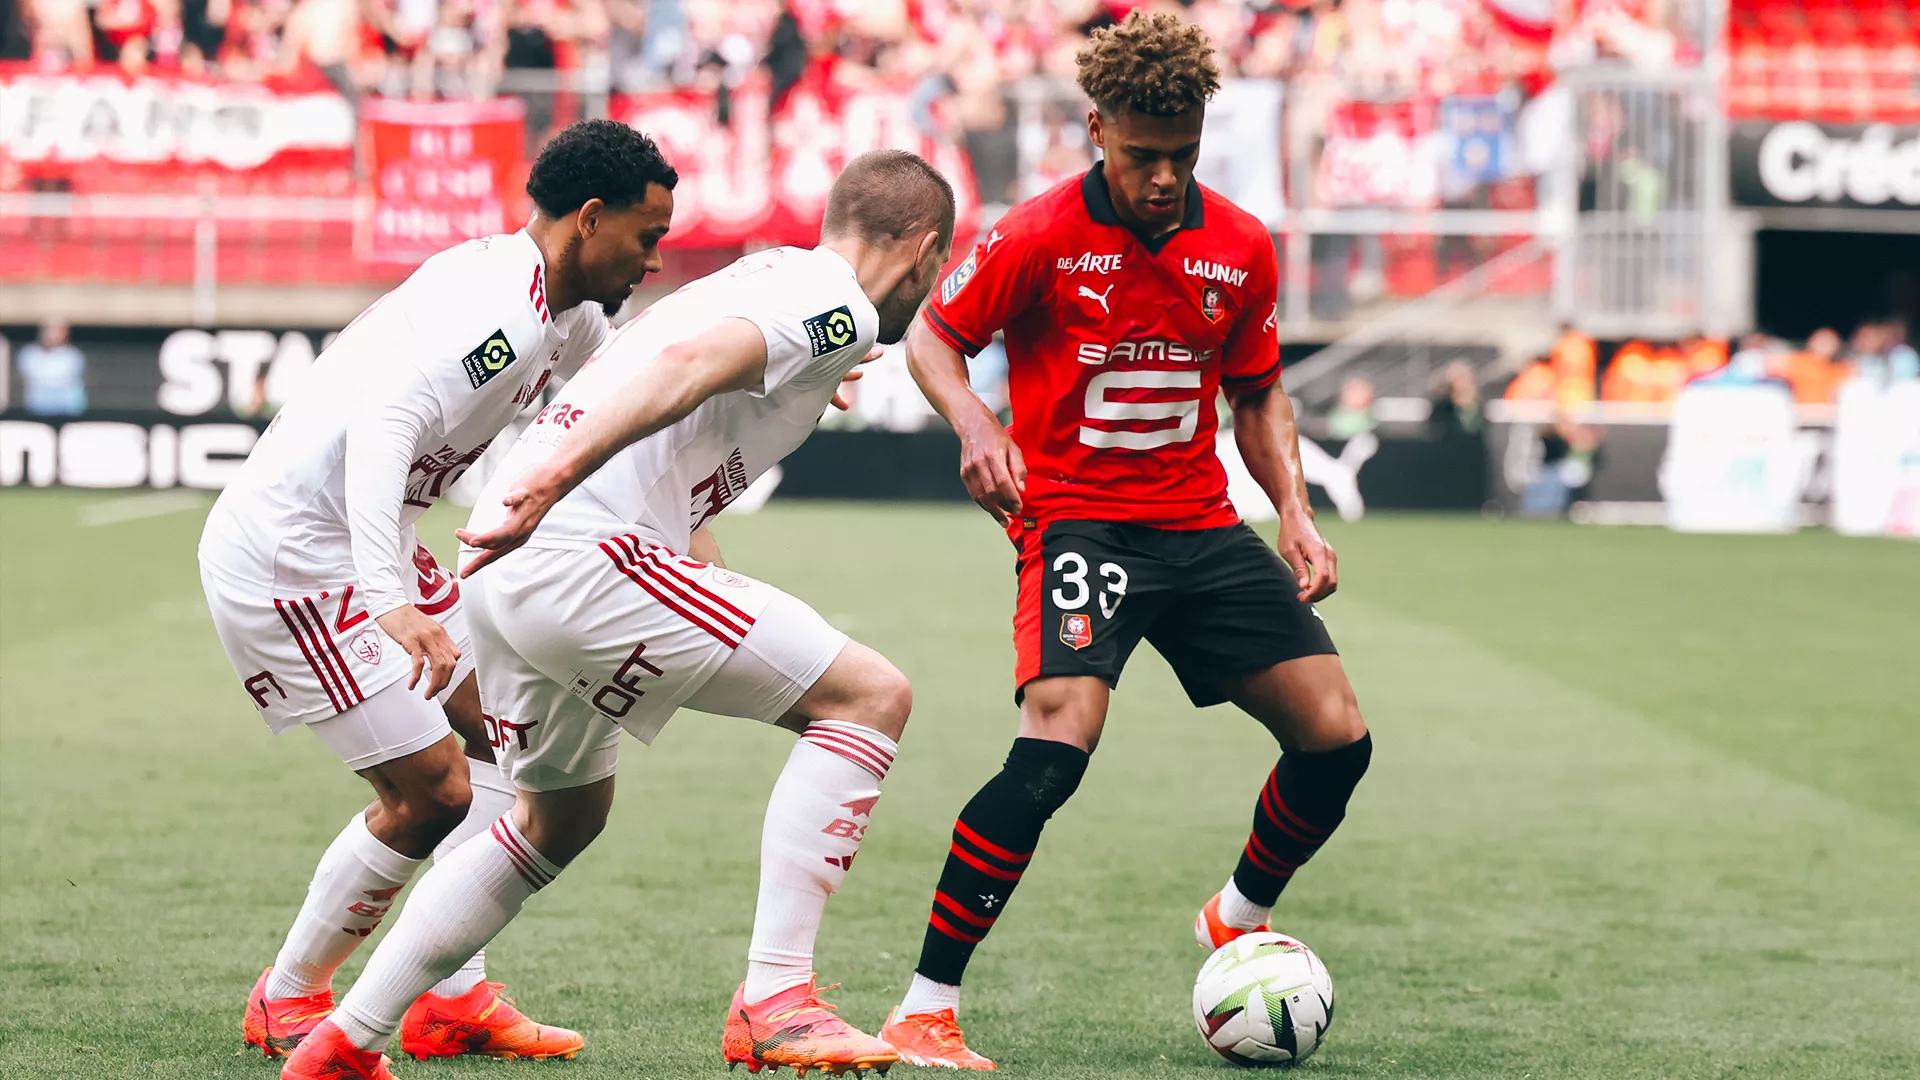 Stade Rennais F.C. / Brest - highlights (4-5)